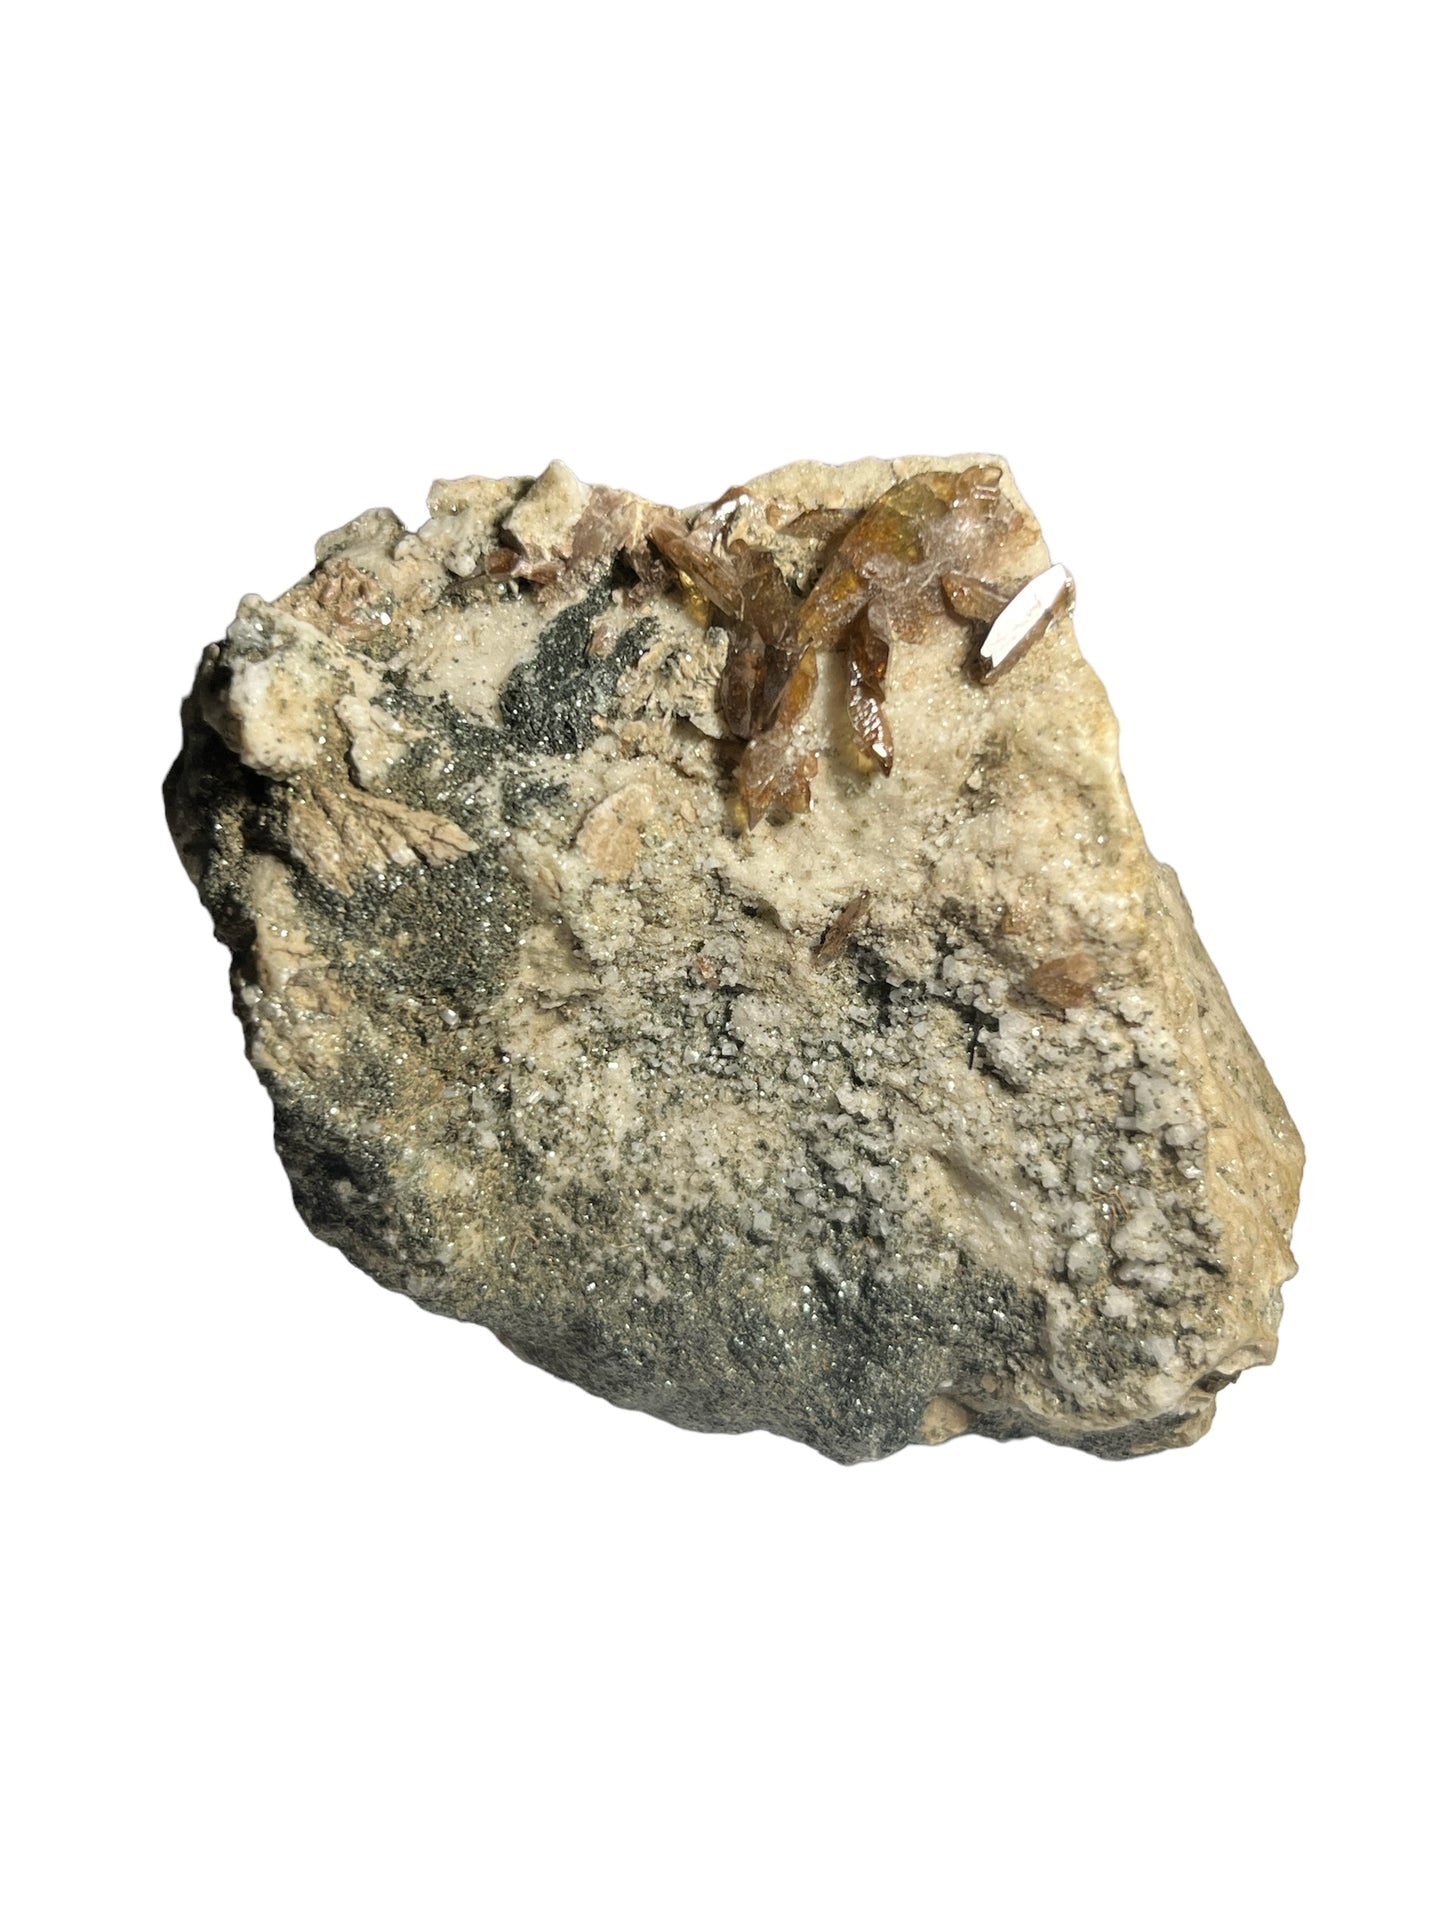 Axinite les rochers d’argentier Oisans France DR288